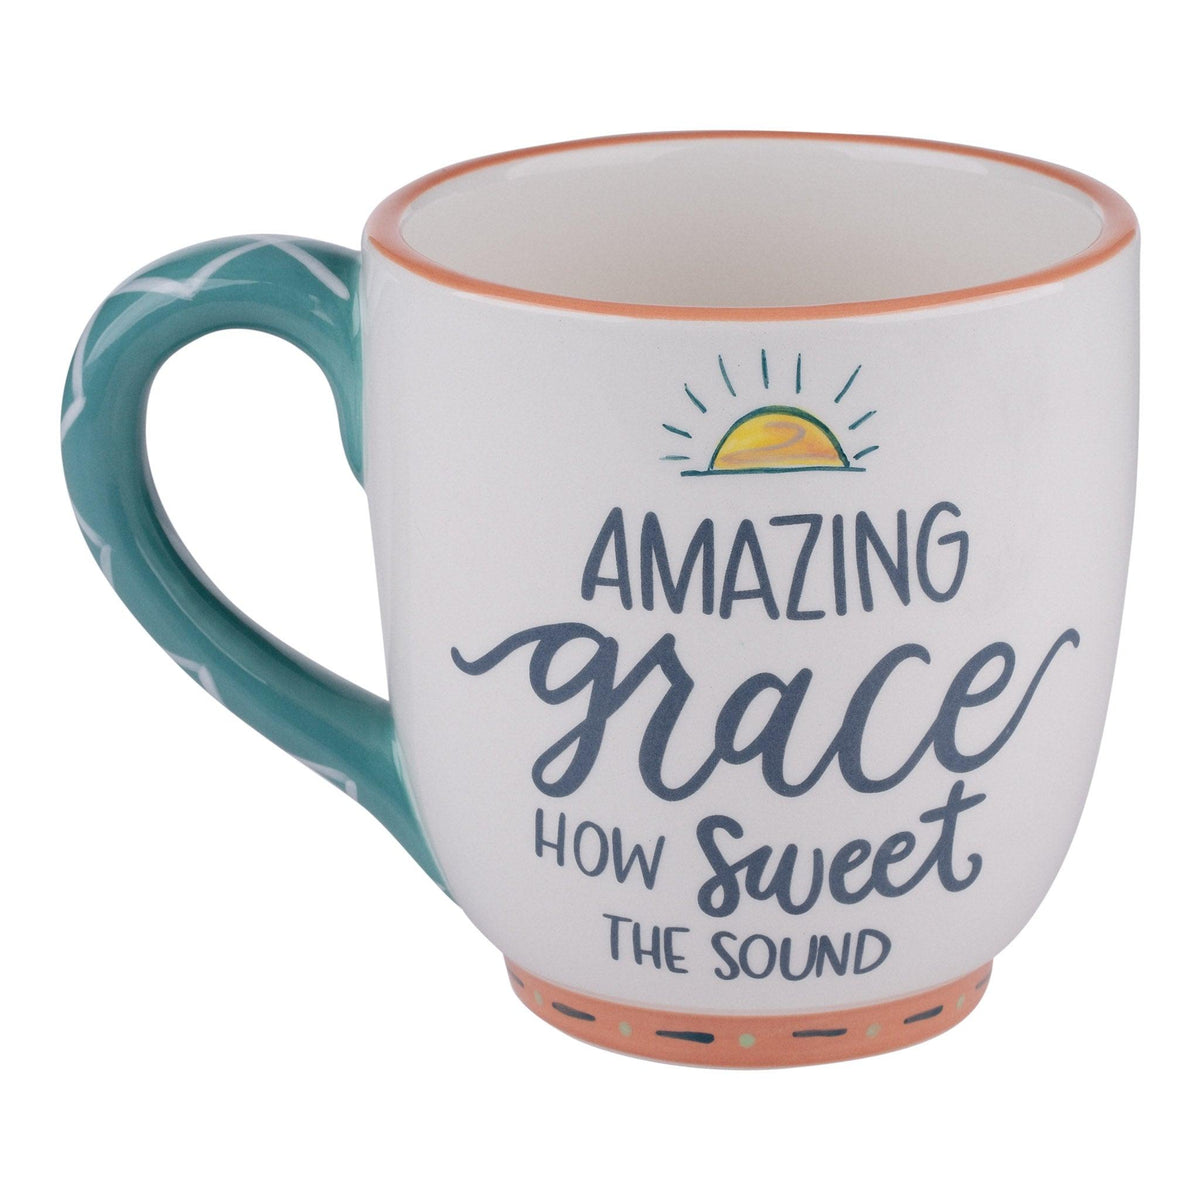 Bloom With Grace Coffee Mug